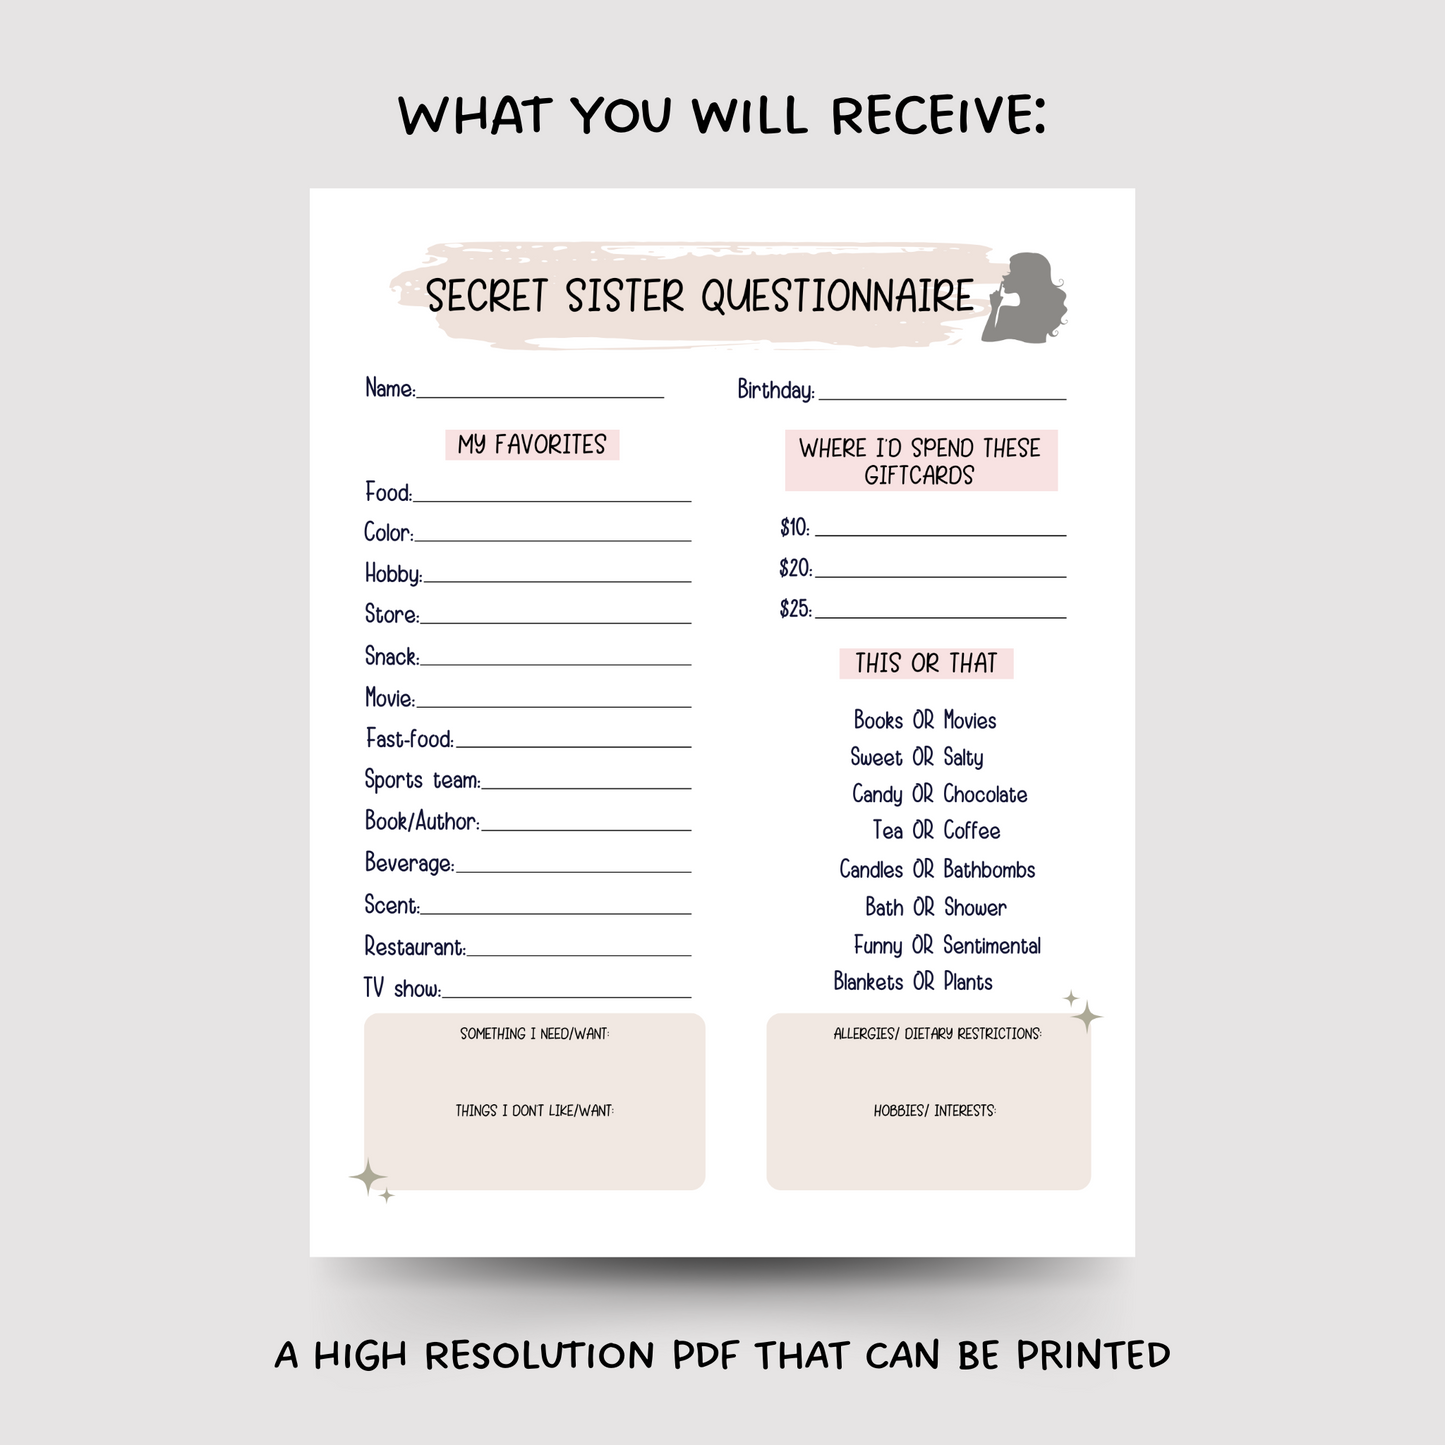 Secret Sister Questionnaire Printable, All About Me Survey